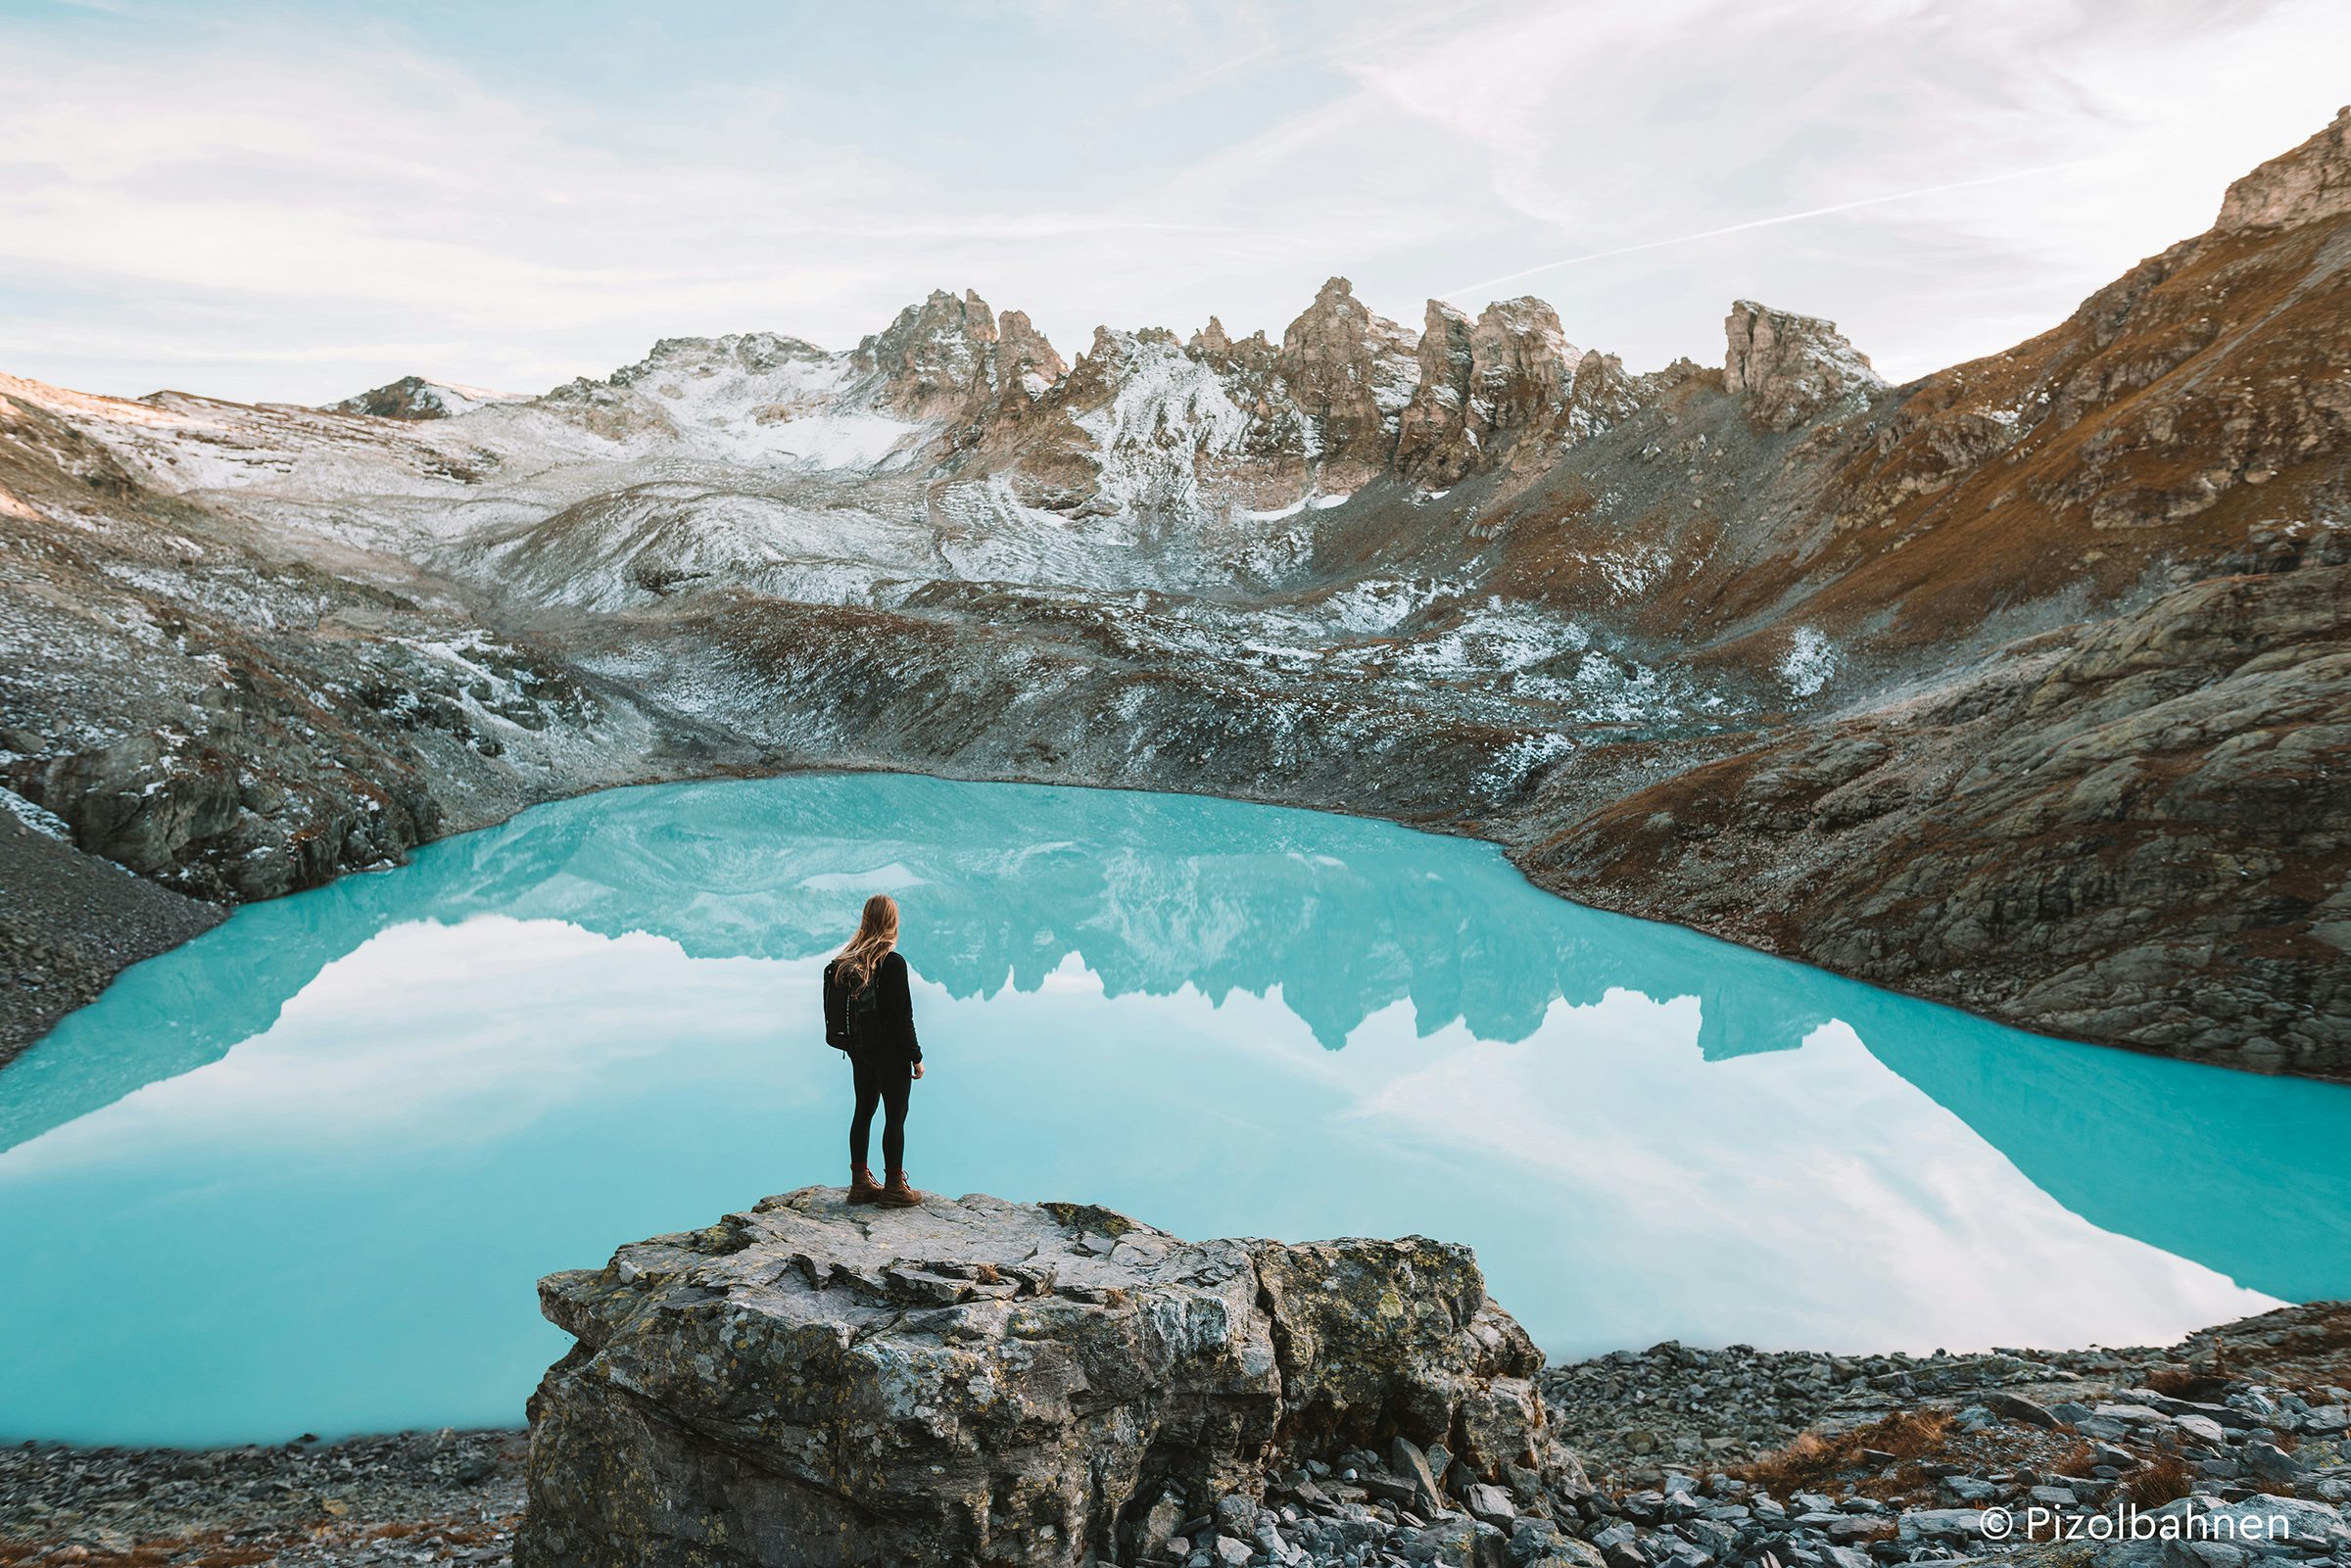 Eine Person steht vor einem türkisblauen See umringt von Bergen.